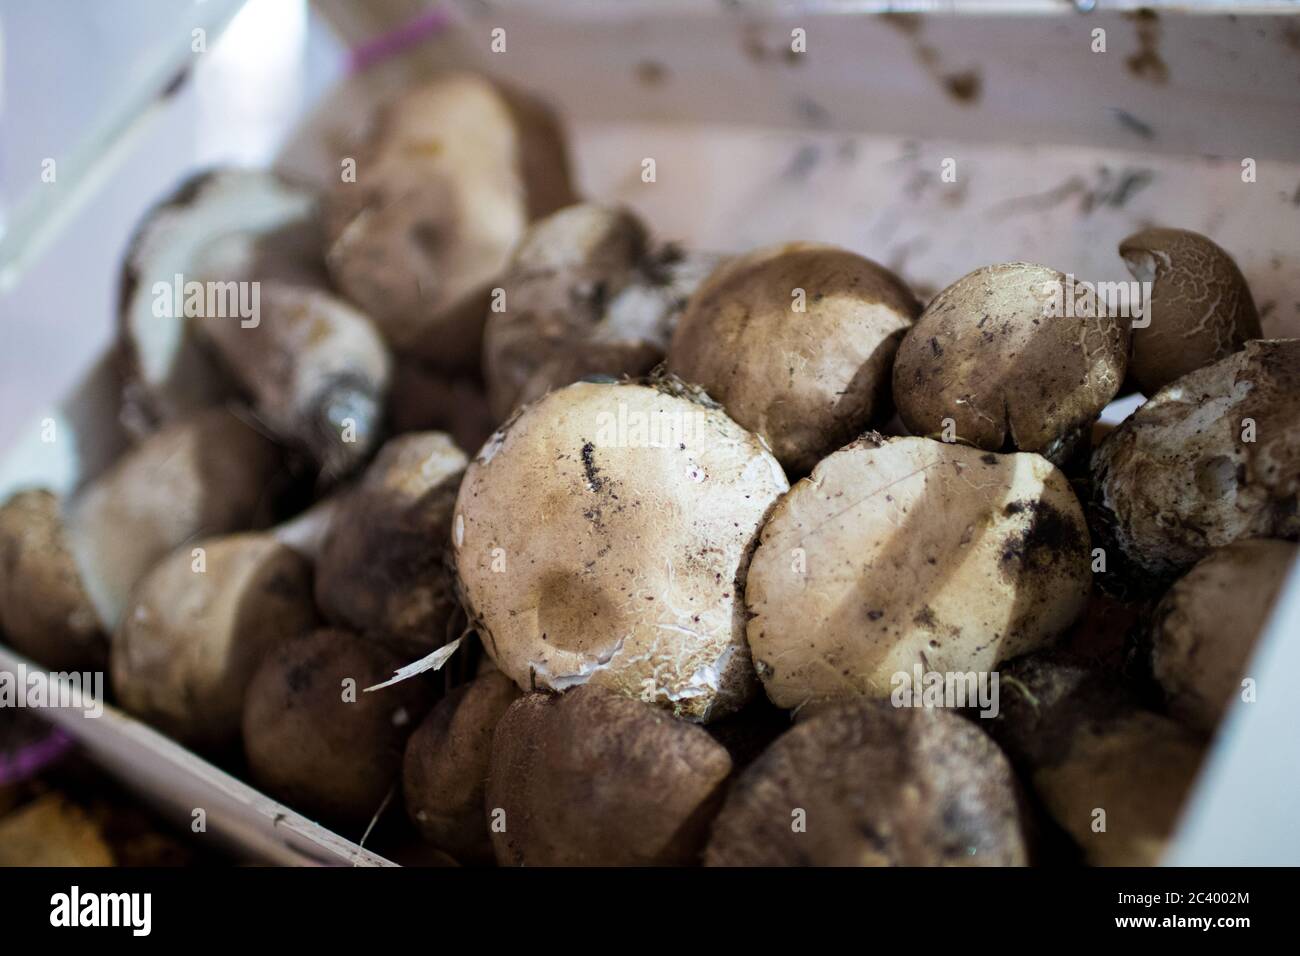 Una cassa di funghi porcini al mercato locale di una storica città italiana. Funghi porcini freschi Foto Stock